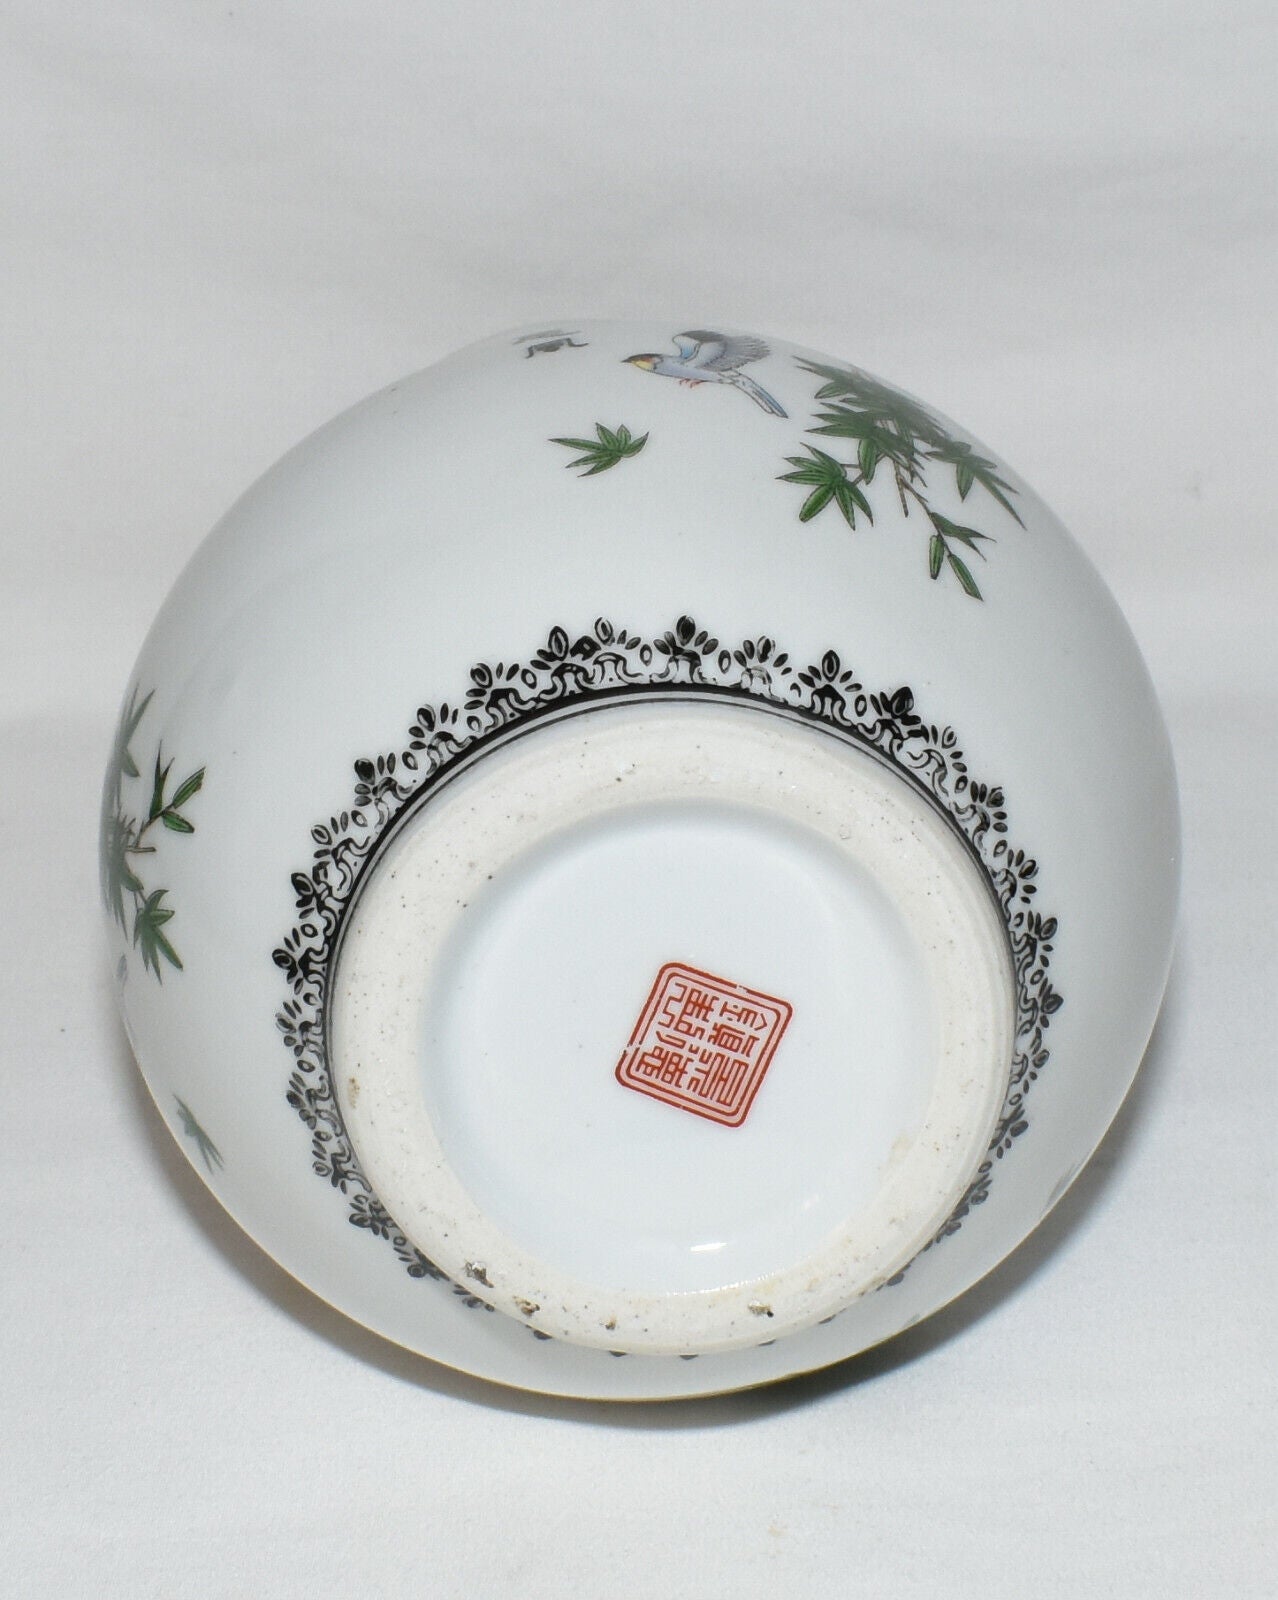 Vintage Asian Vase with Moonlight Birds Trees Vintage Ceramic Flower Vase Signed